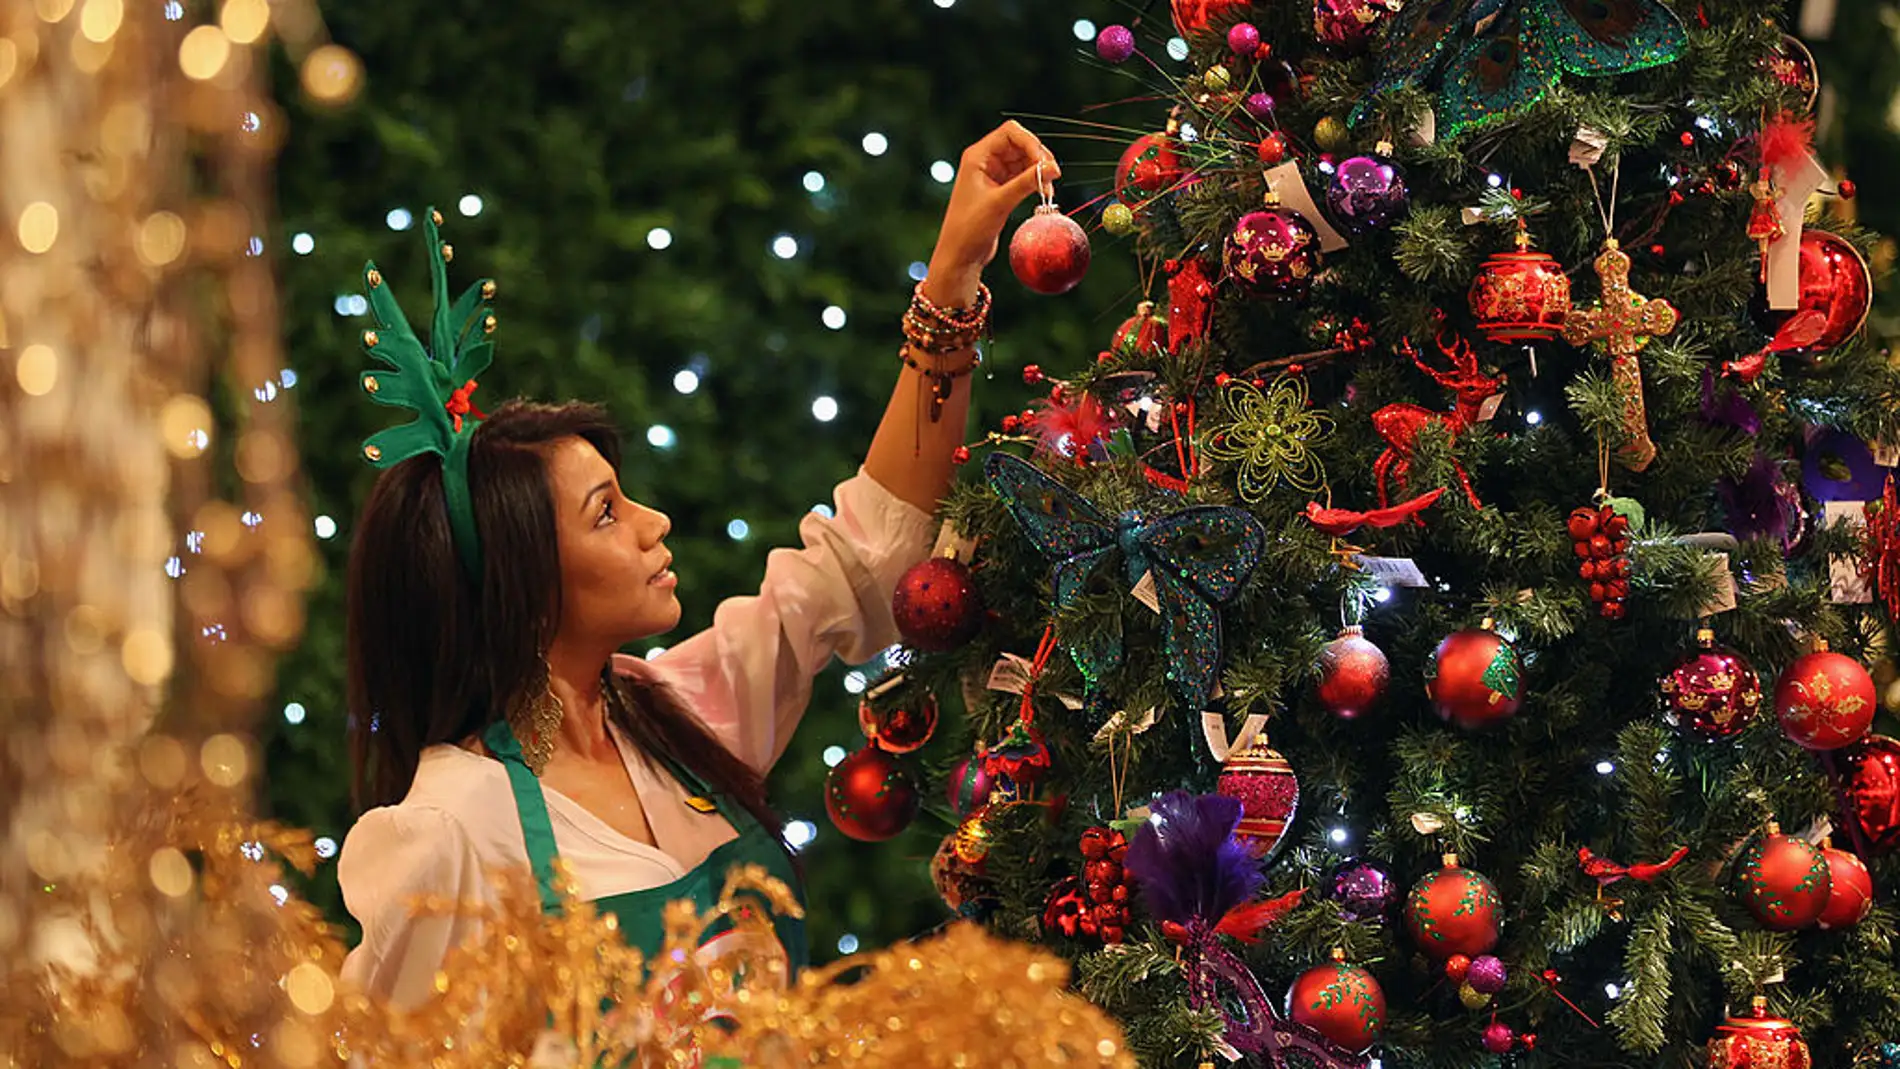  El árbol de Navidad: ¿conoces su origen?